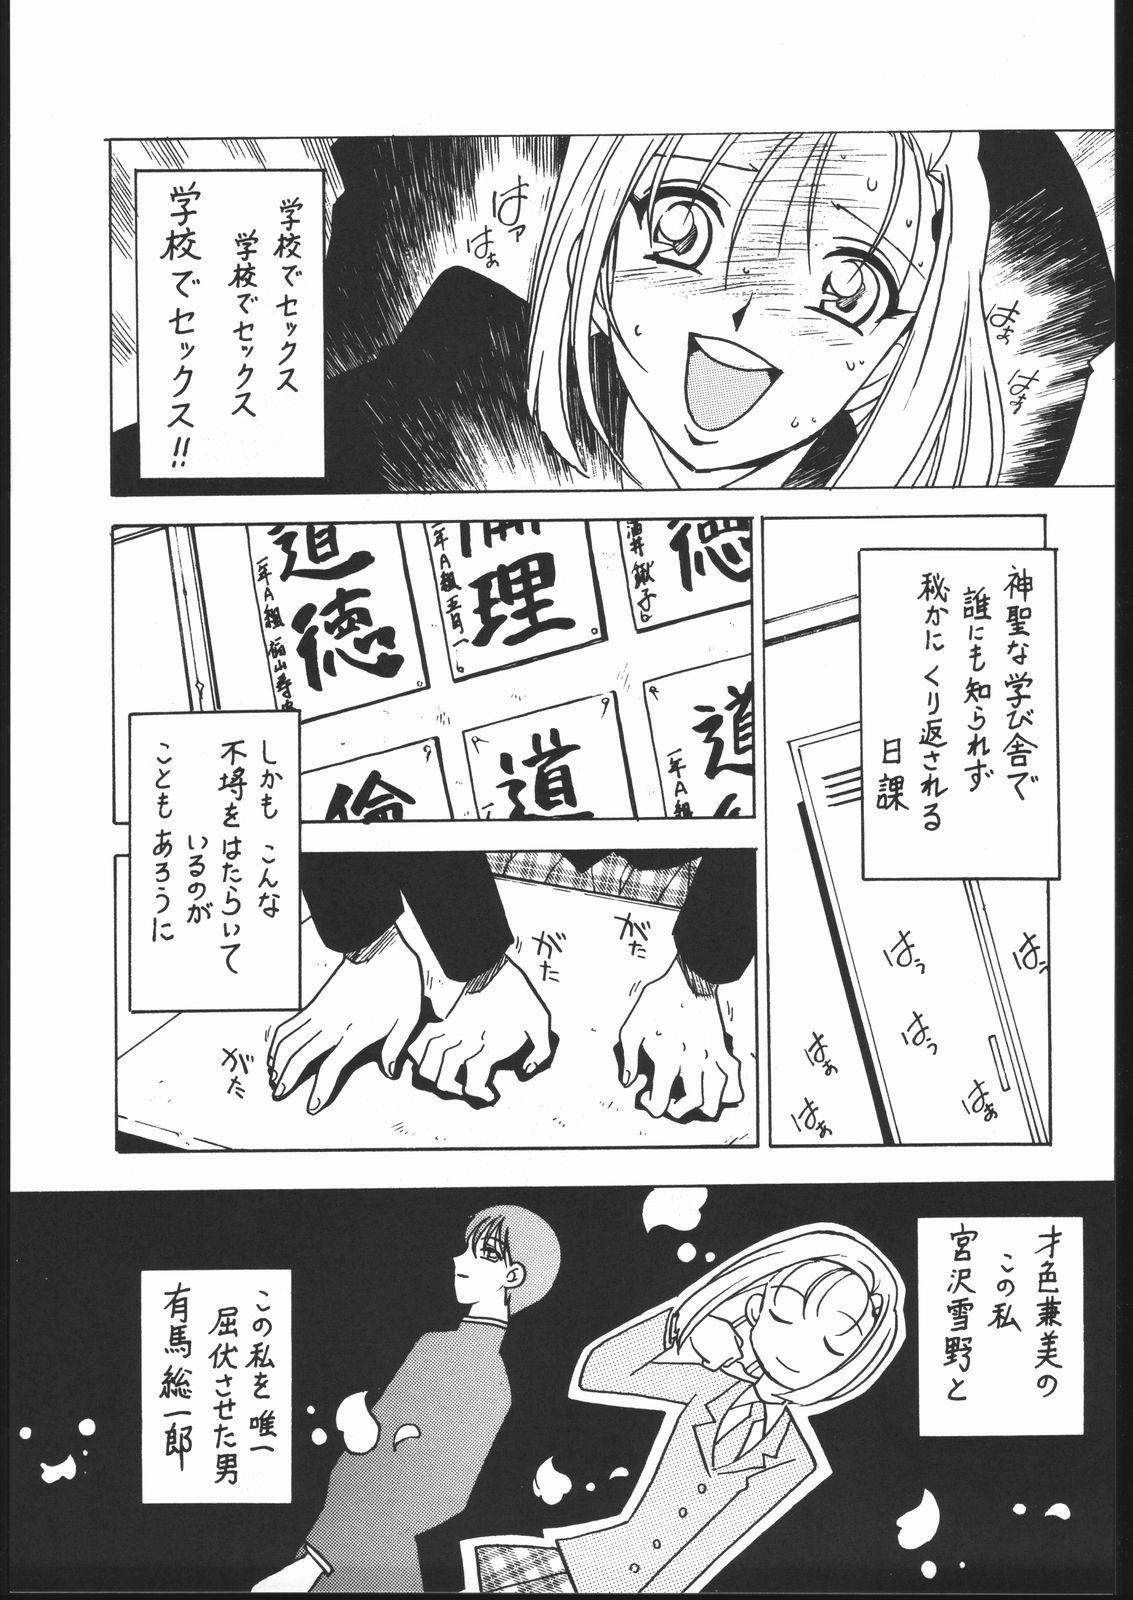 Pov Blowjob Kyouakuteki Shidou Vol. 10 Junbigou - Kare kano Handjobs - Page 4